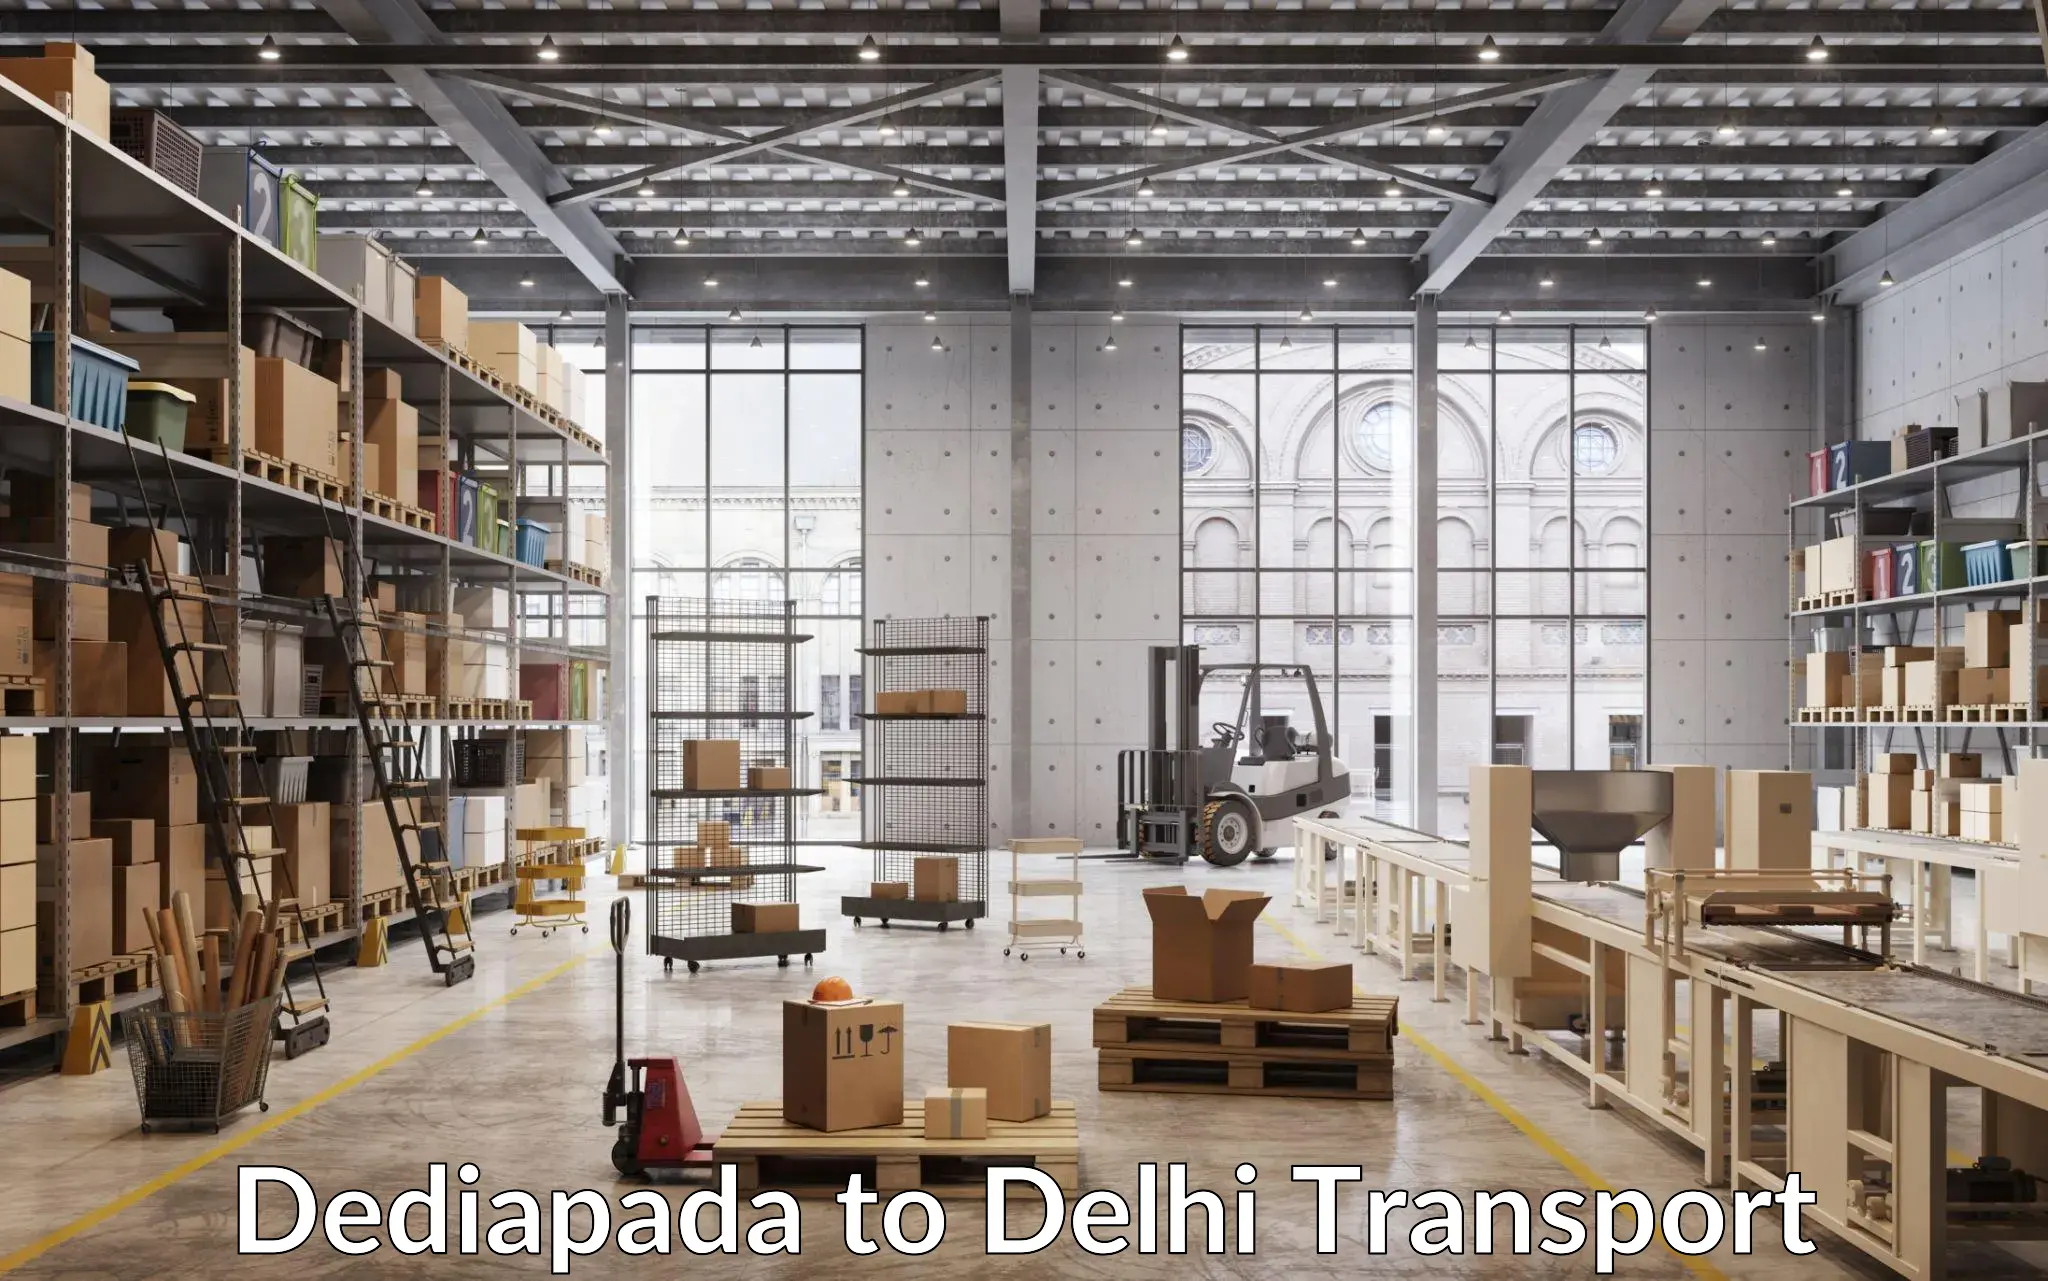 Shipping partner Dediapada to Lodhi Road